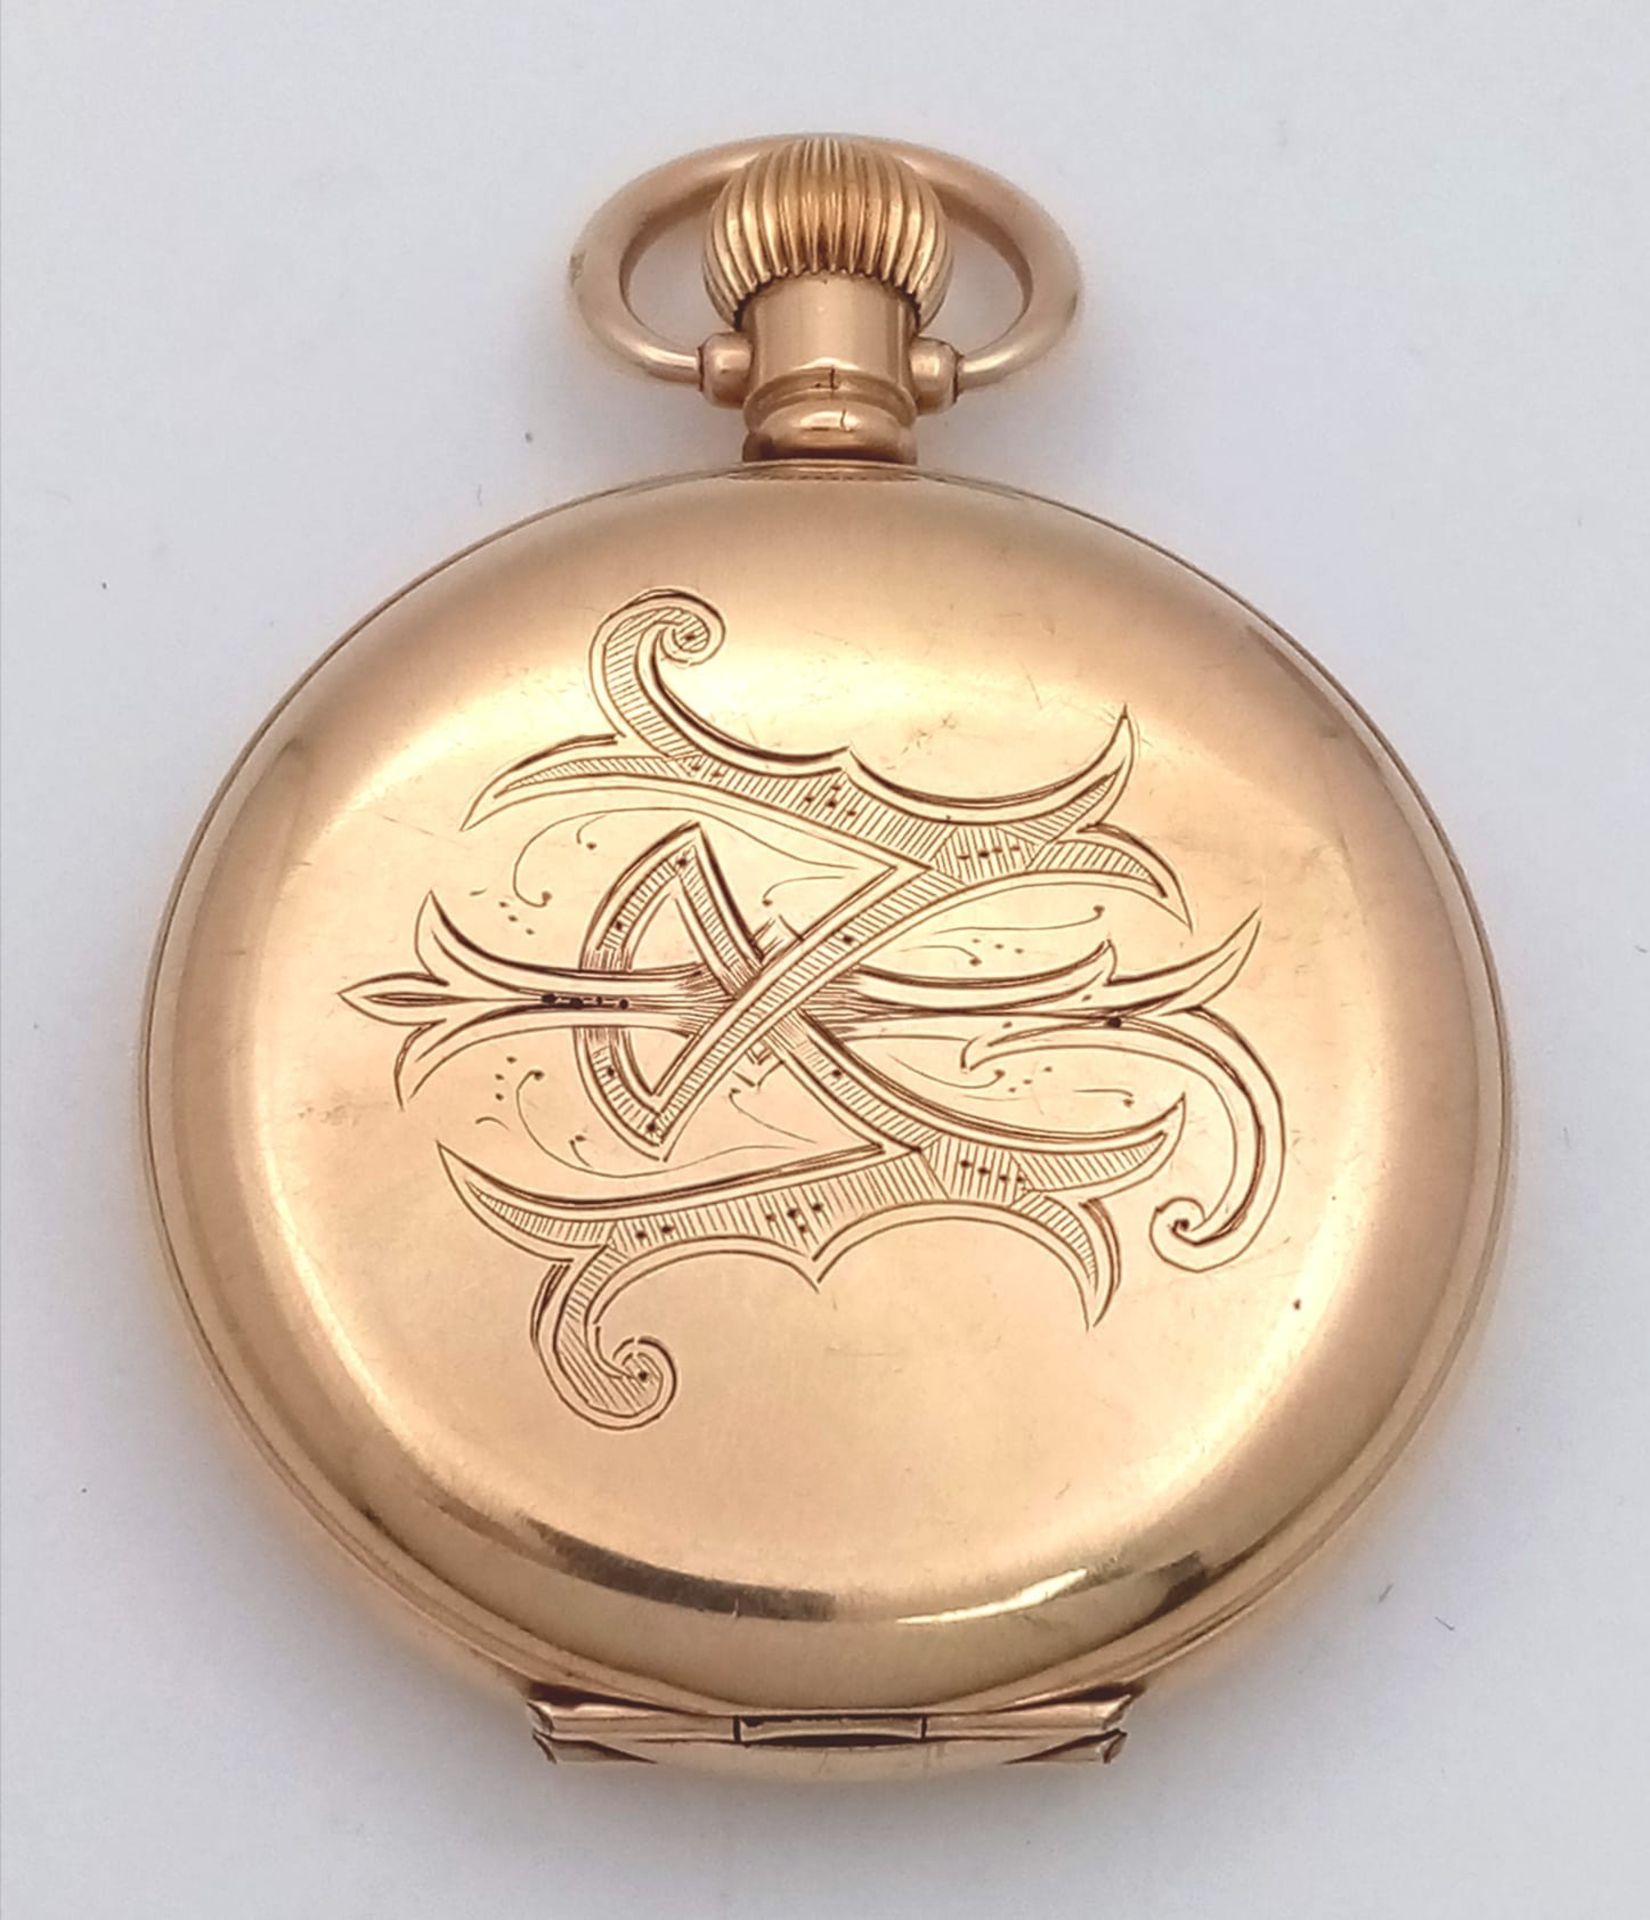 An Antique 10K Gold-Plated Cased Waltham Traveler Full Hunter Pocket Watch. Dennison case. Top winde - Image 5 of 12